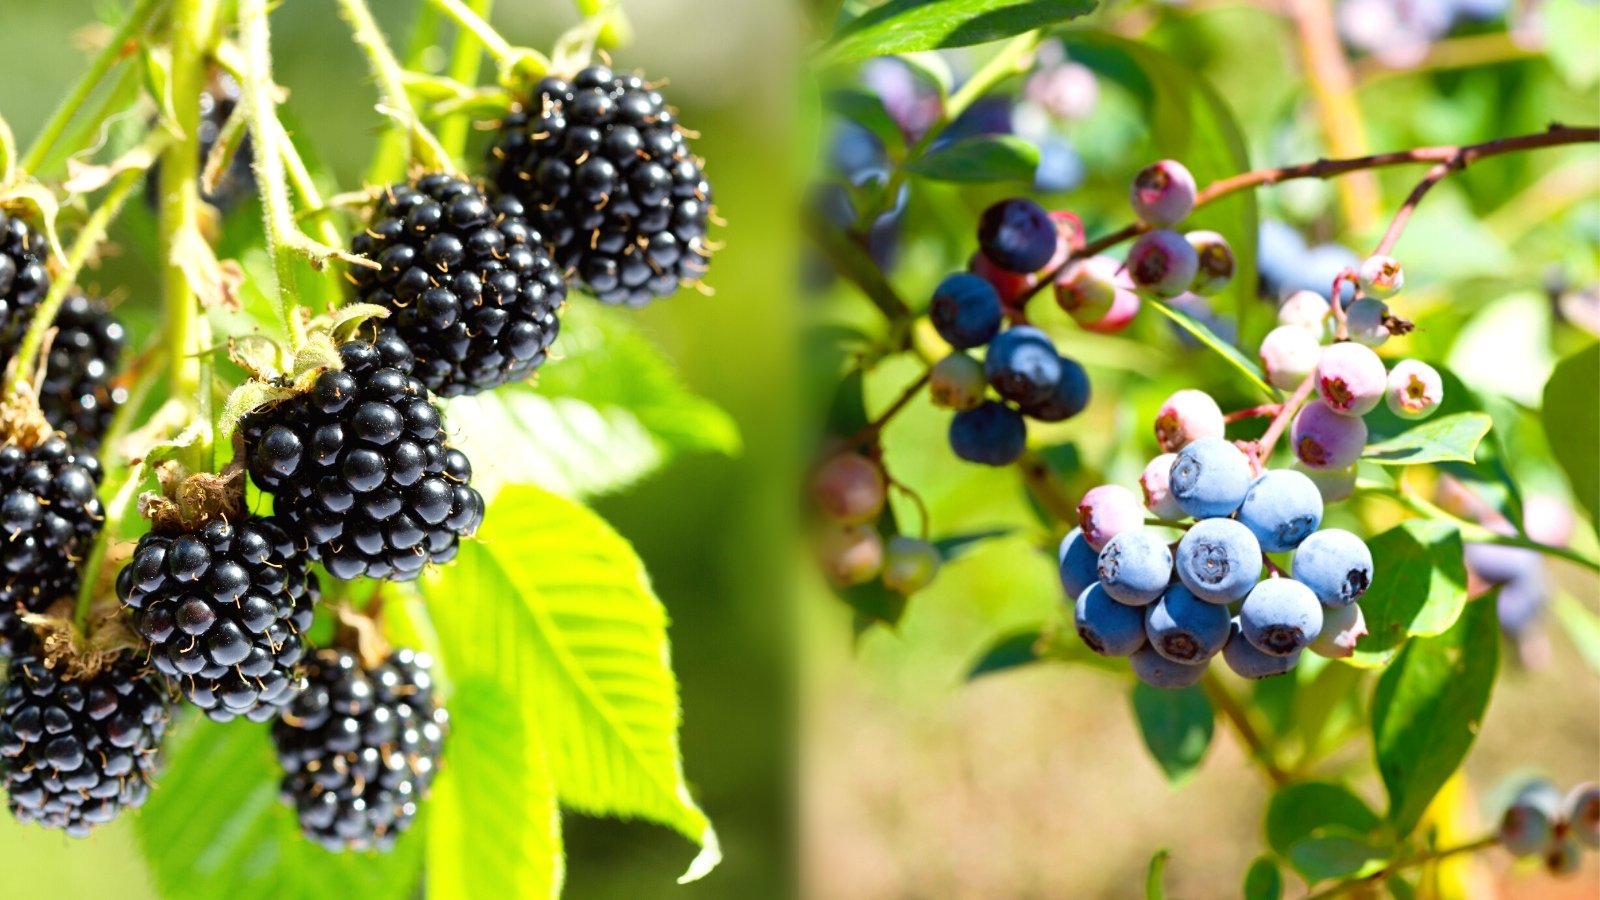 blueberries and blackberies